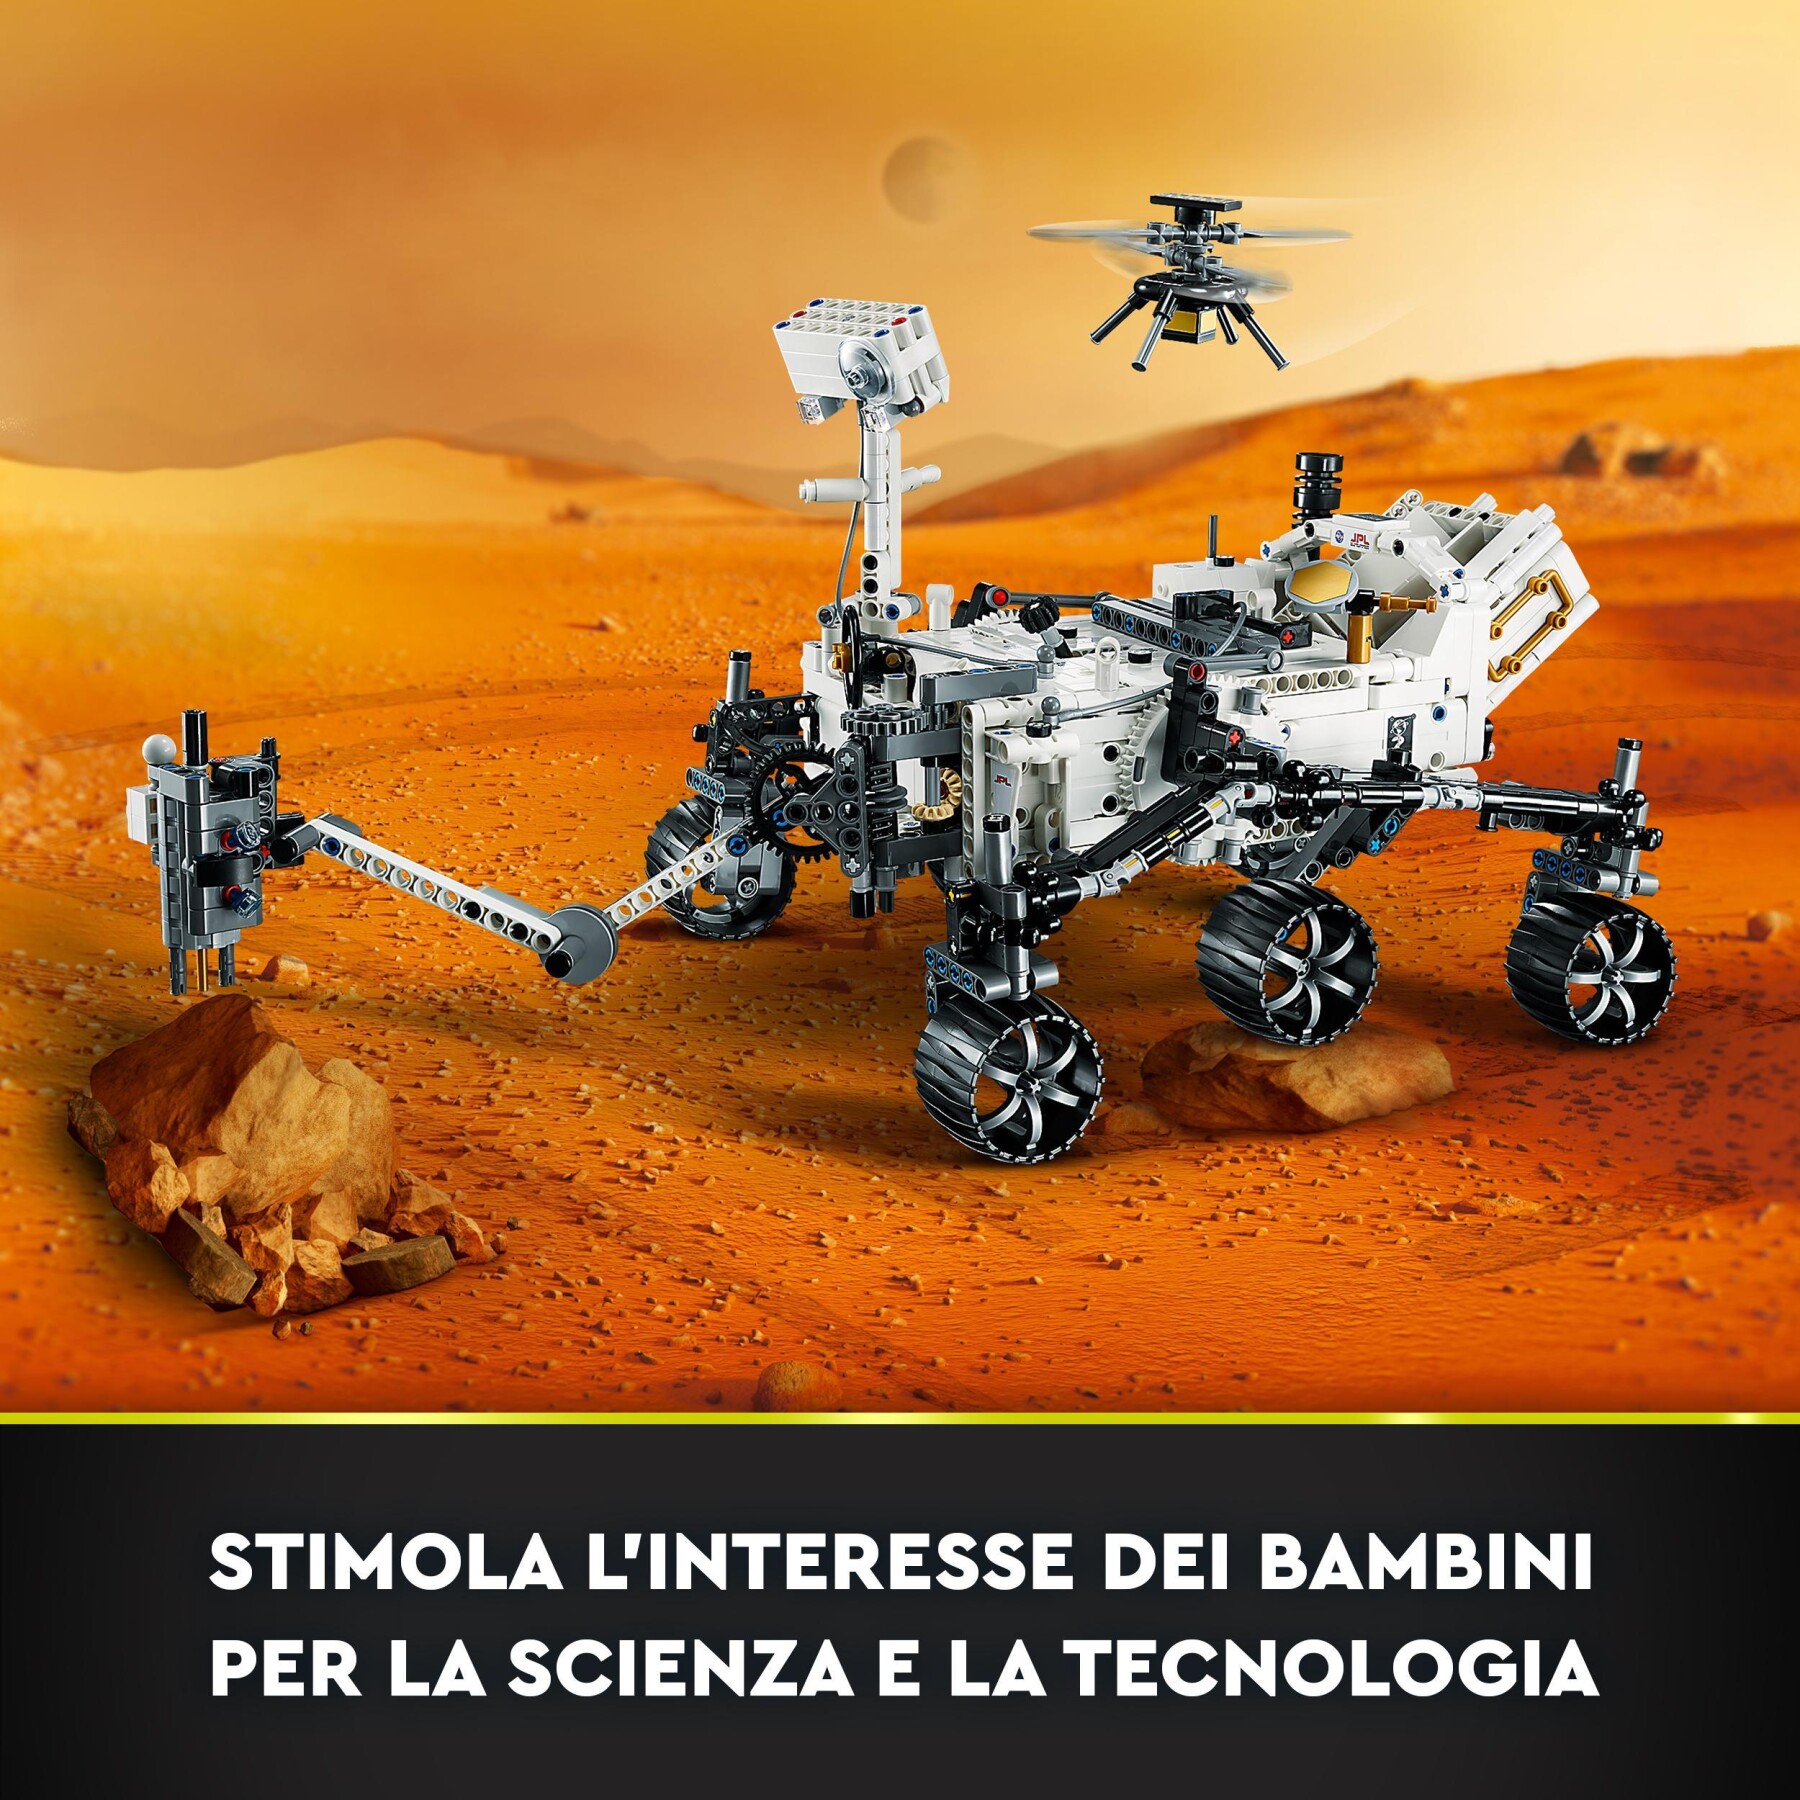 Lego technic 42158 nasa mars rover perseverance, set spaziale con esperienza app ar, idea regalo gioco scientifico bambini 10+ - LEGO TECHNIC